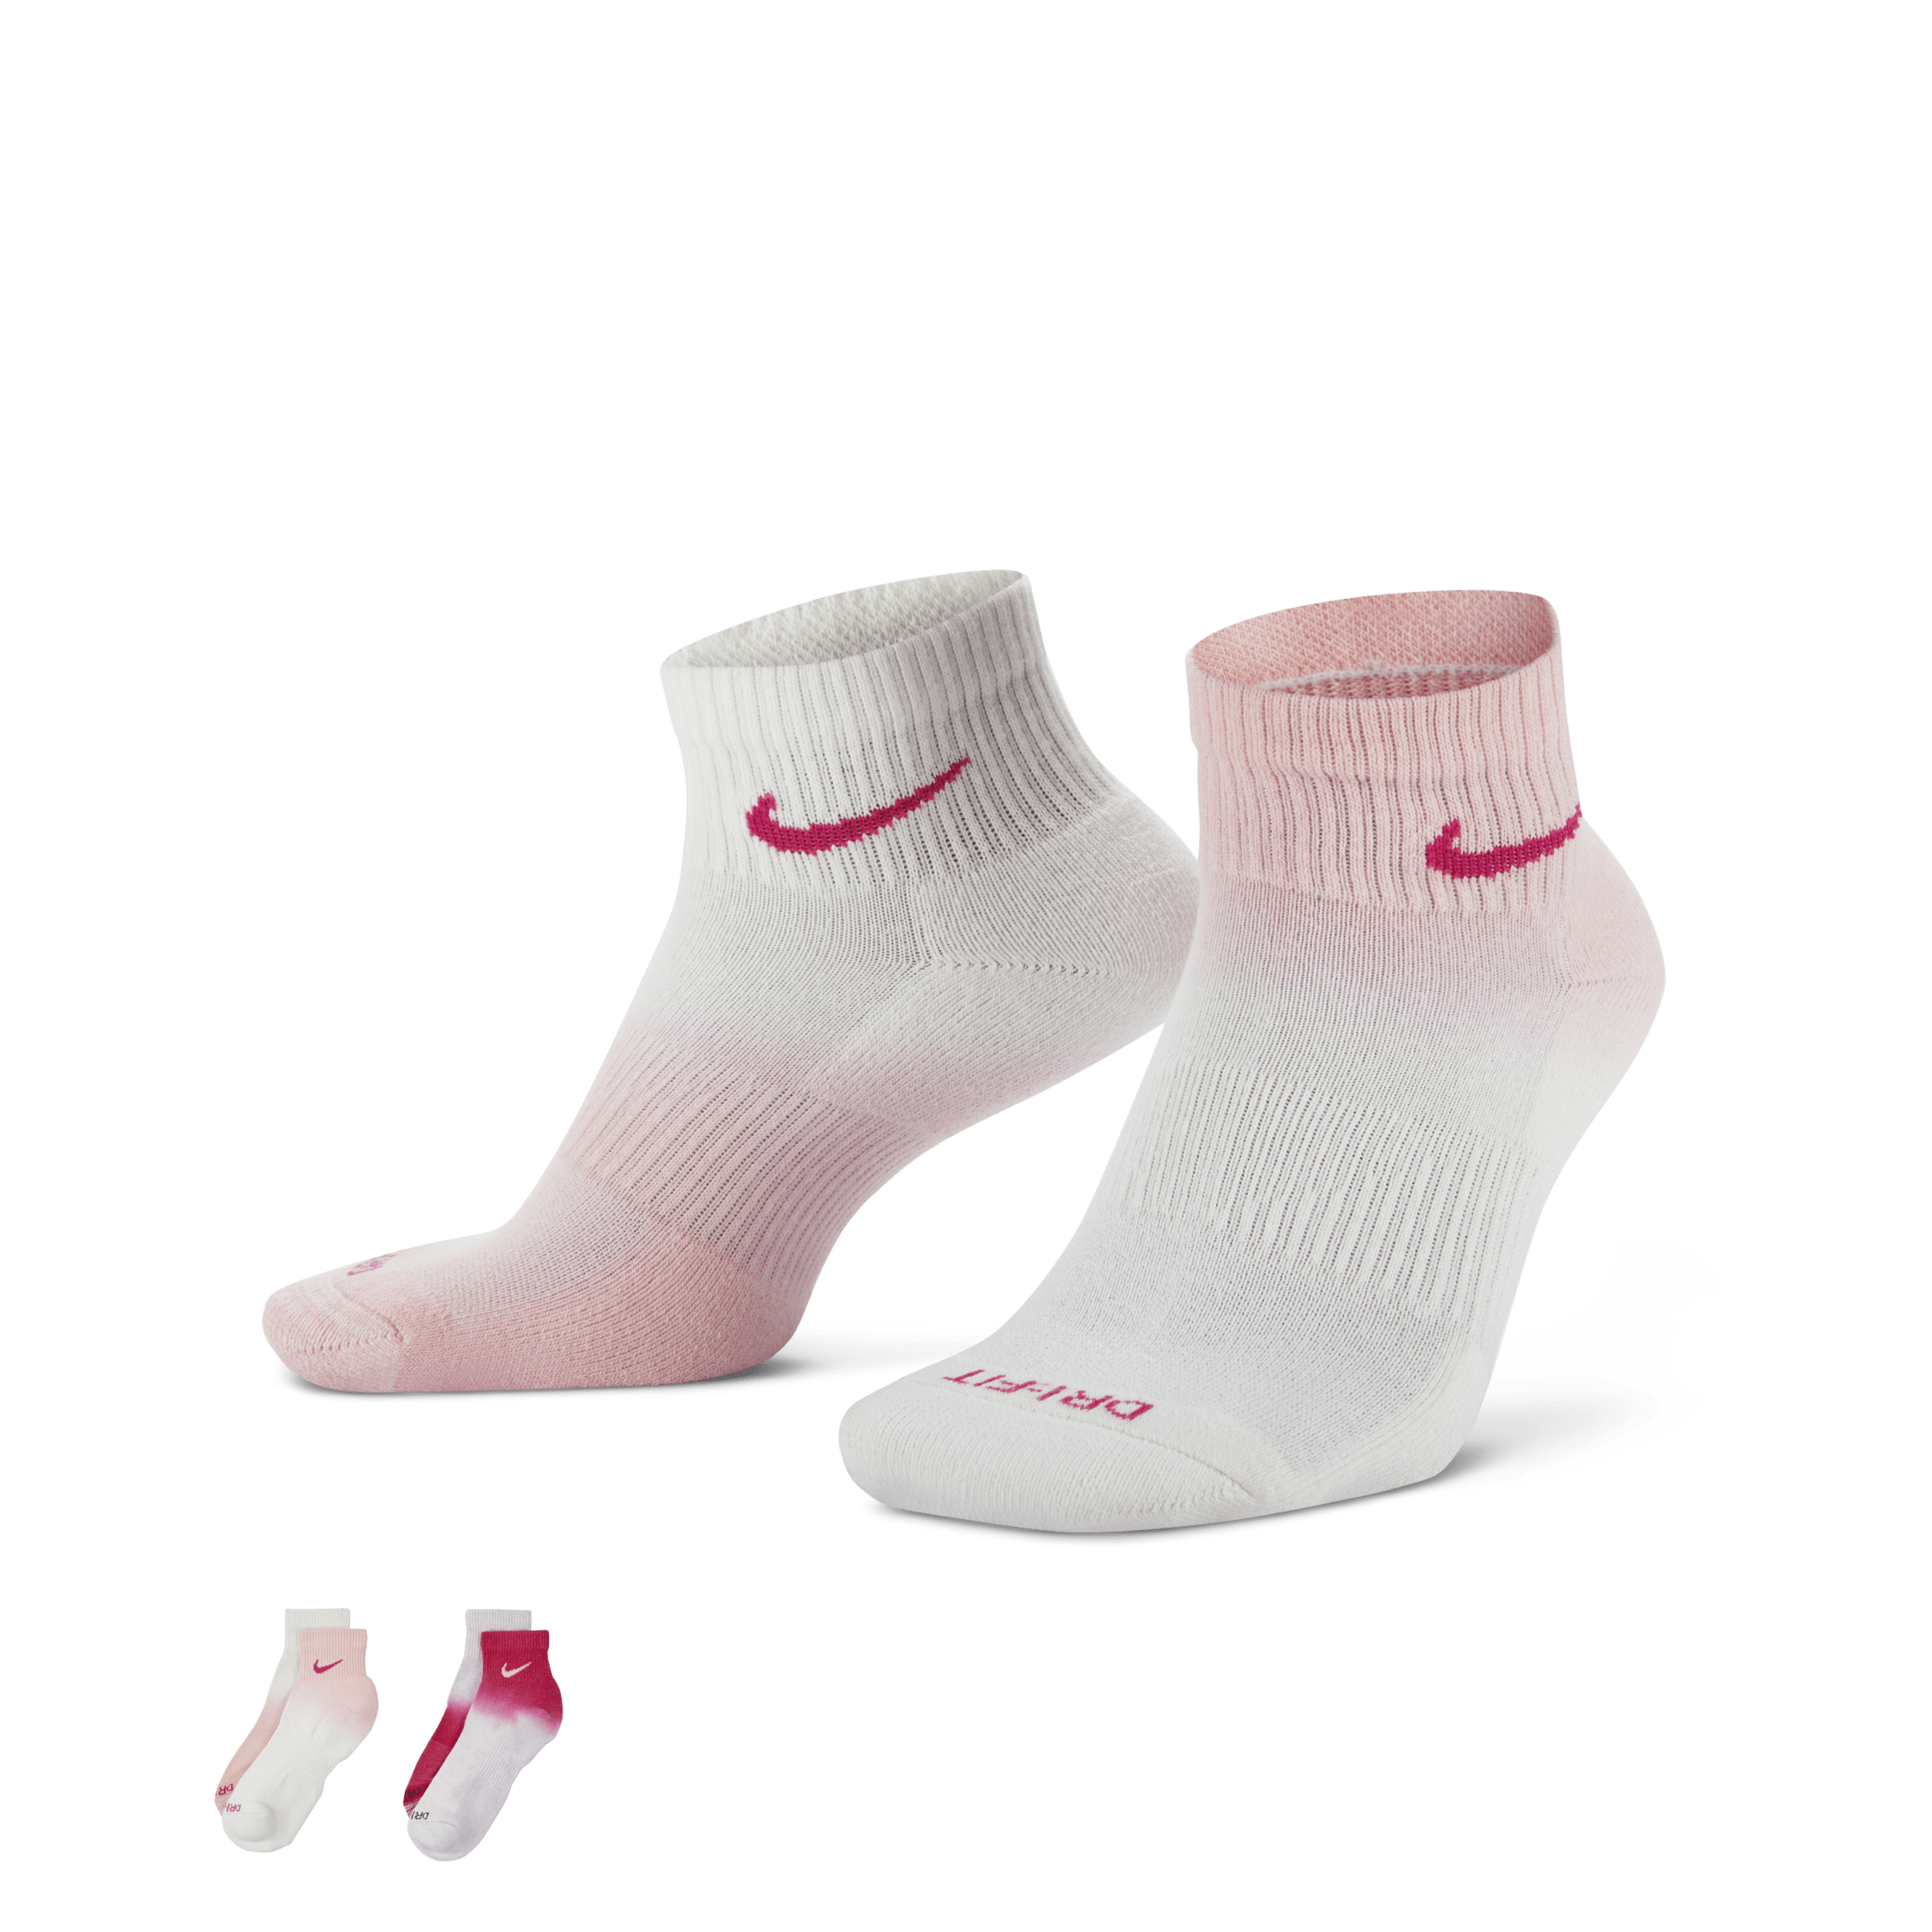 Calze alla caviglia ammortizzate Nike Everyday Plus (2 paia) - Multicolore